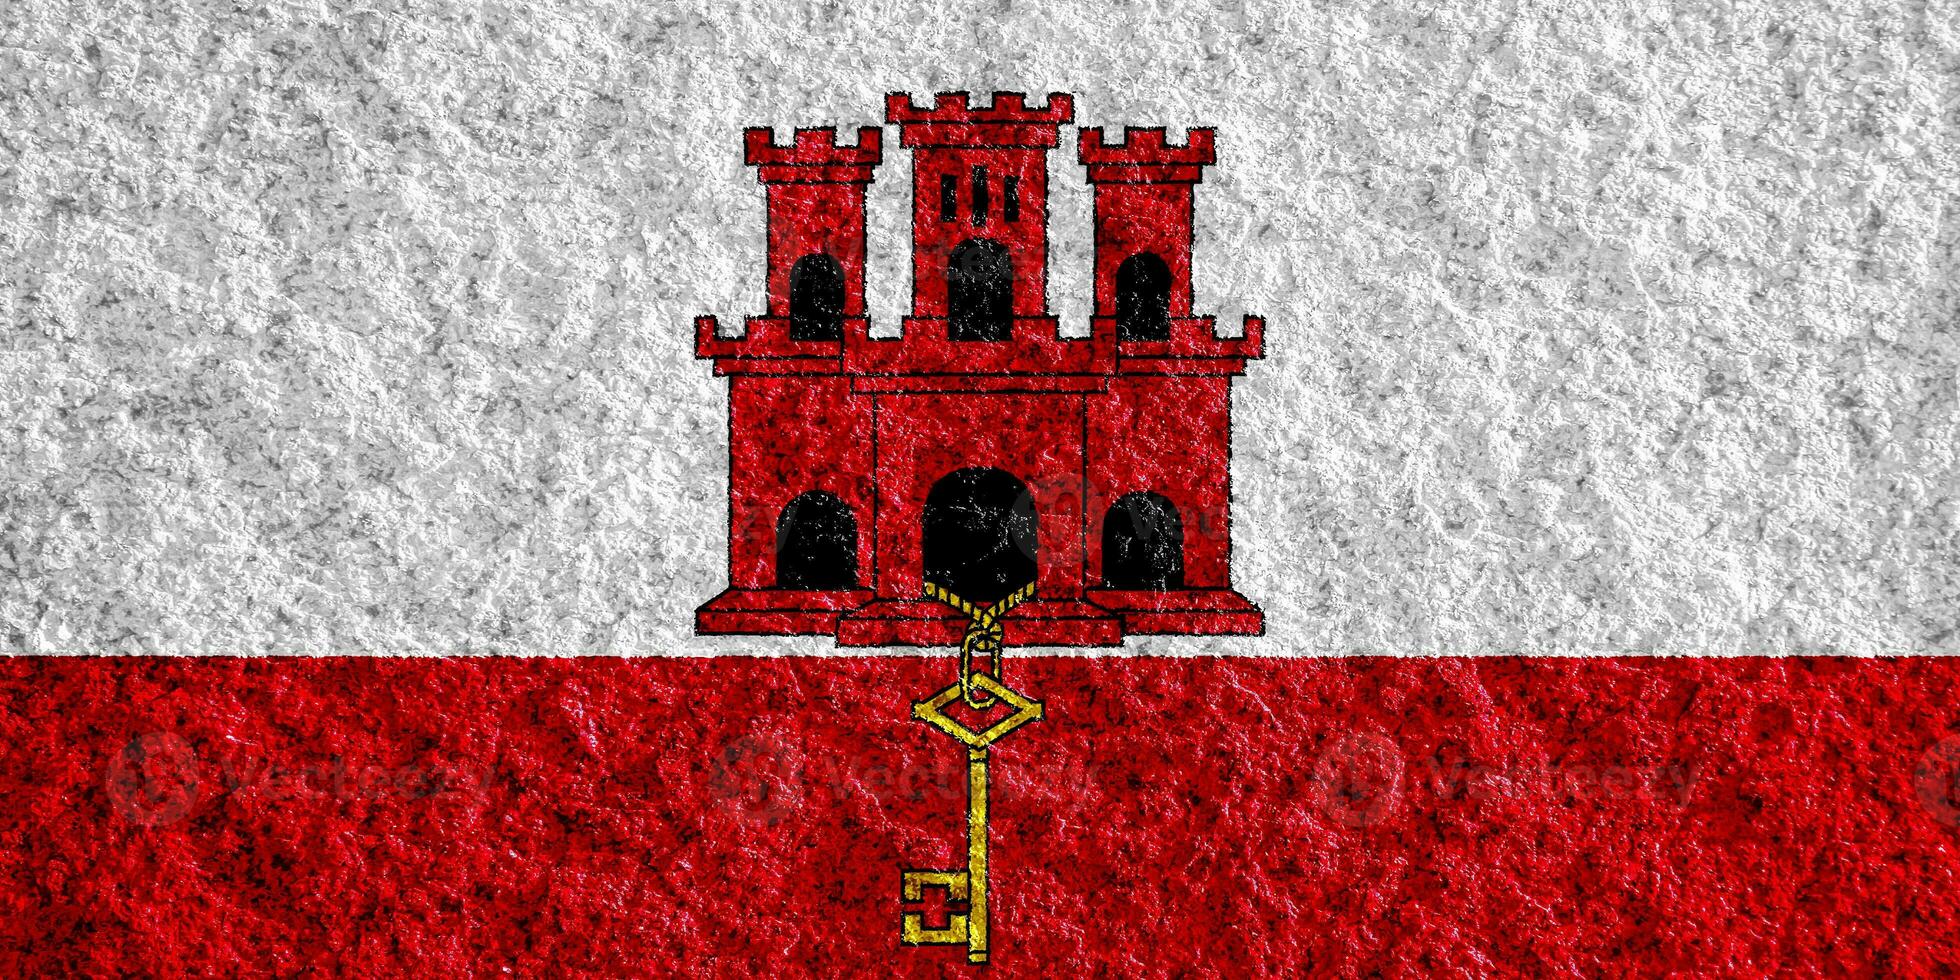 drapeau de gibraltar sur un fond texturé. collage conceptuel. photo